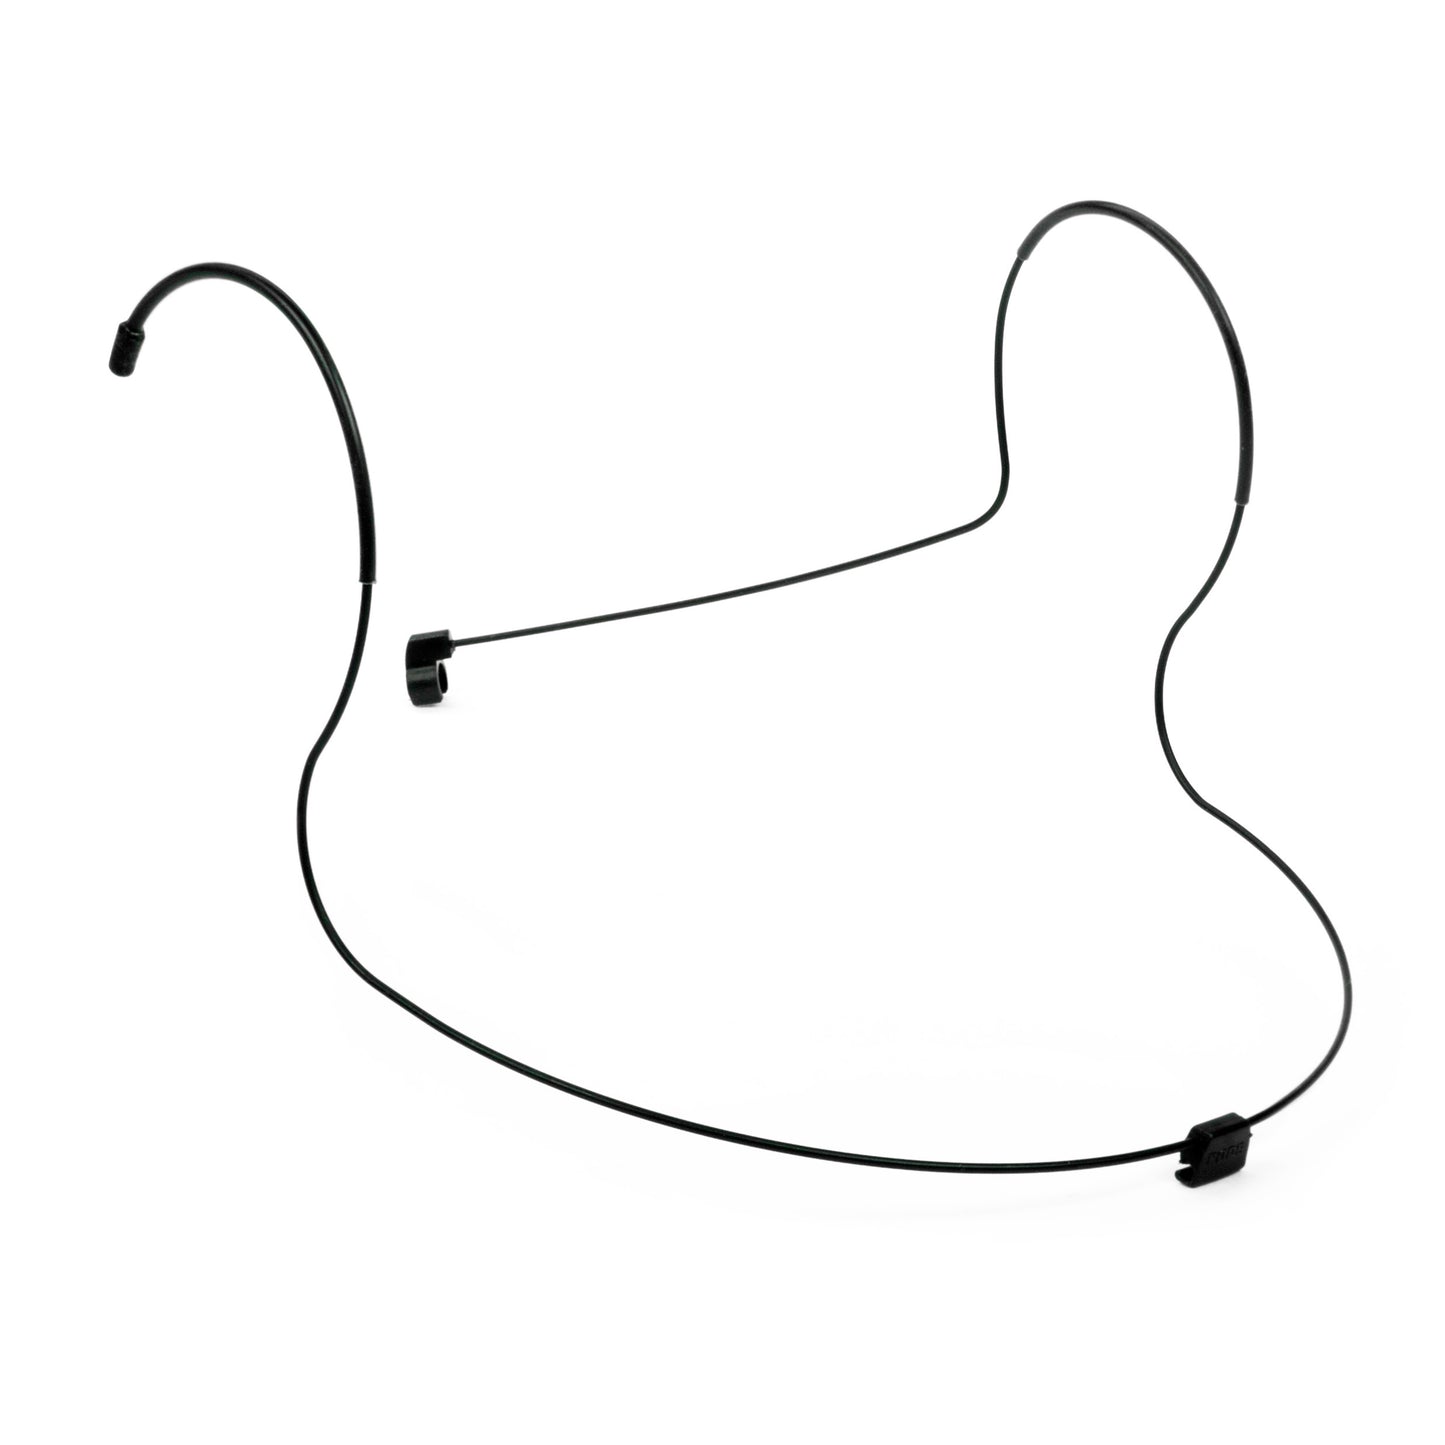 Soporte sobre cabeza para micrófono lavalier RØDE Lav-Headset